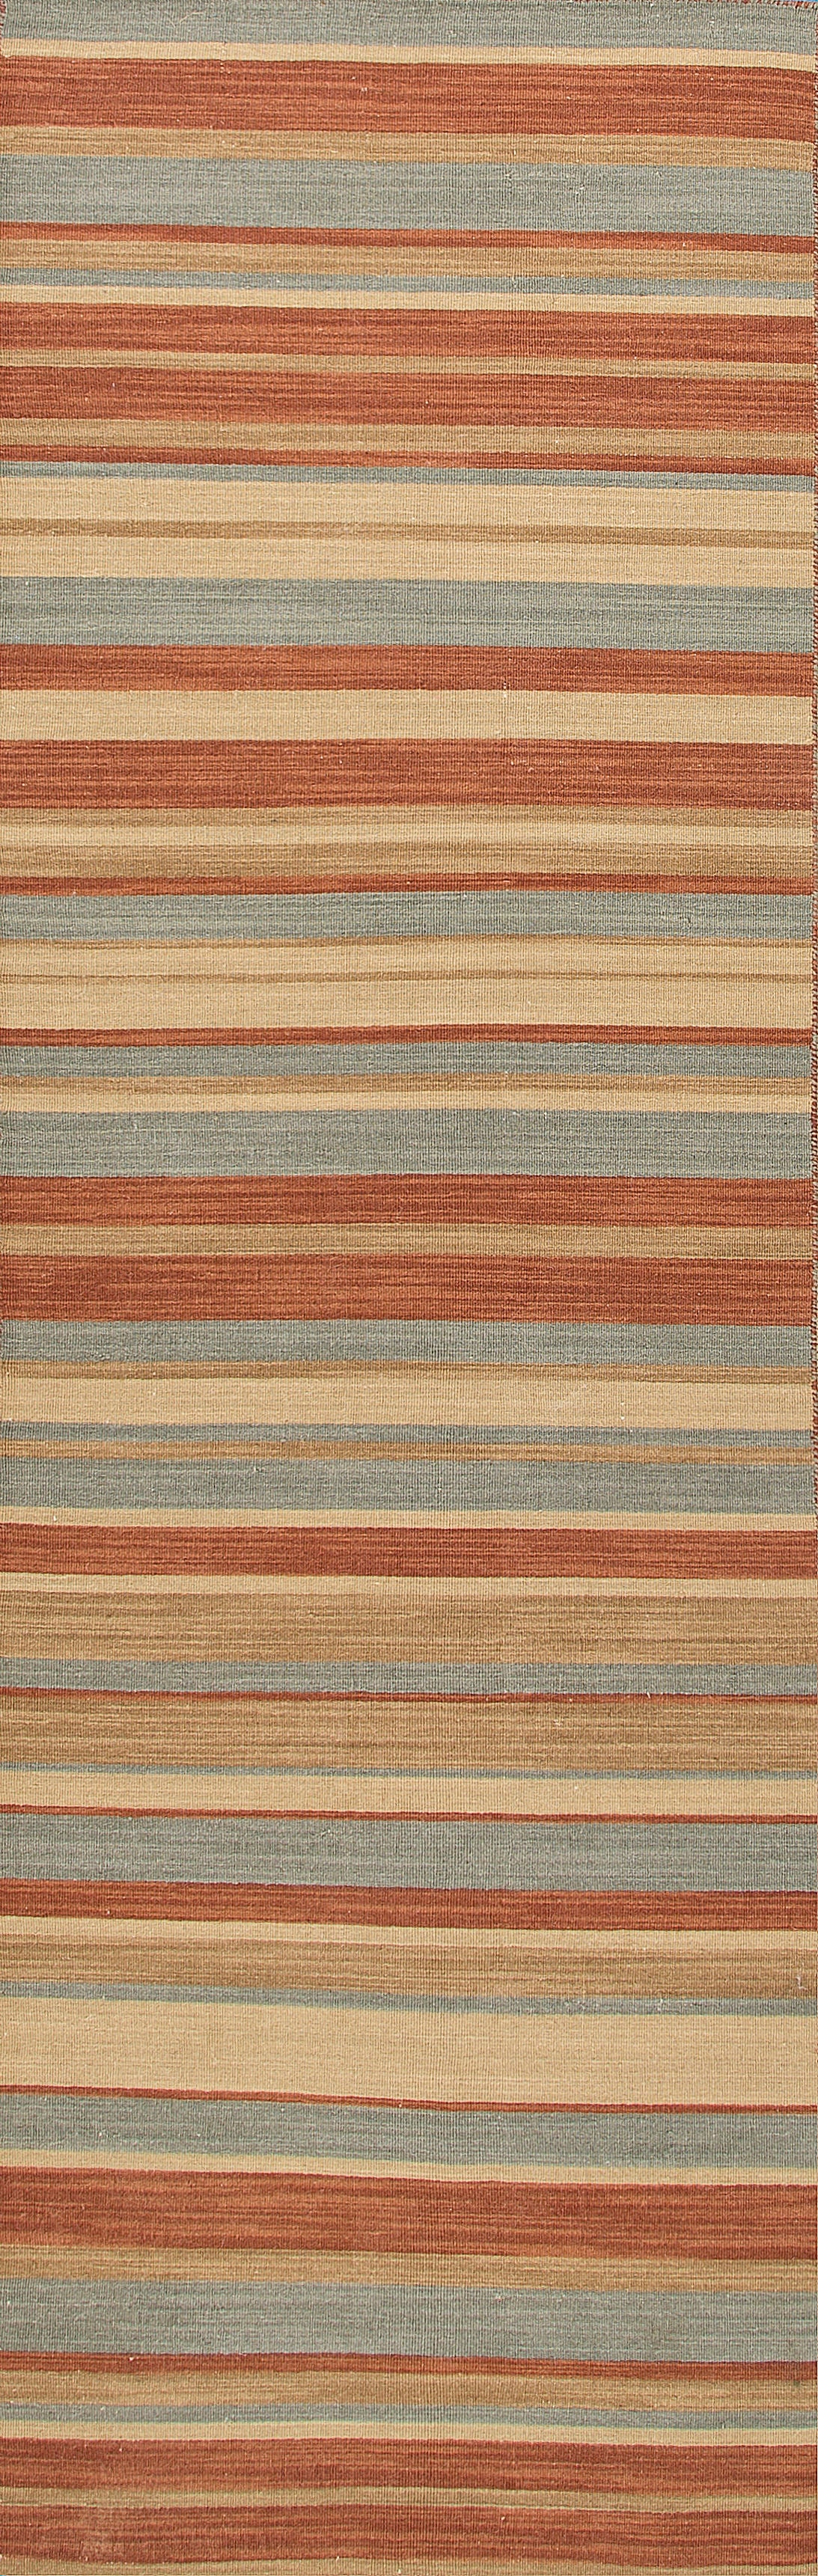 Jaipur Rugs RUG Floor Coverings Flat Weave Stripe Pattern